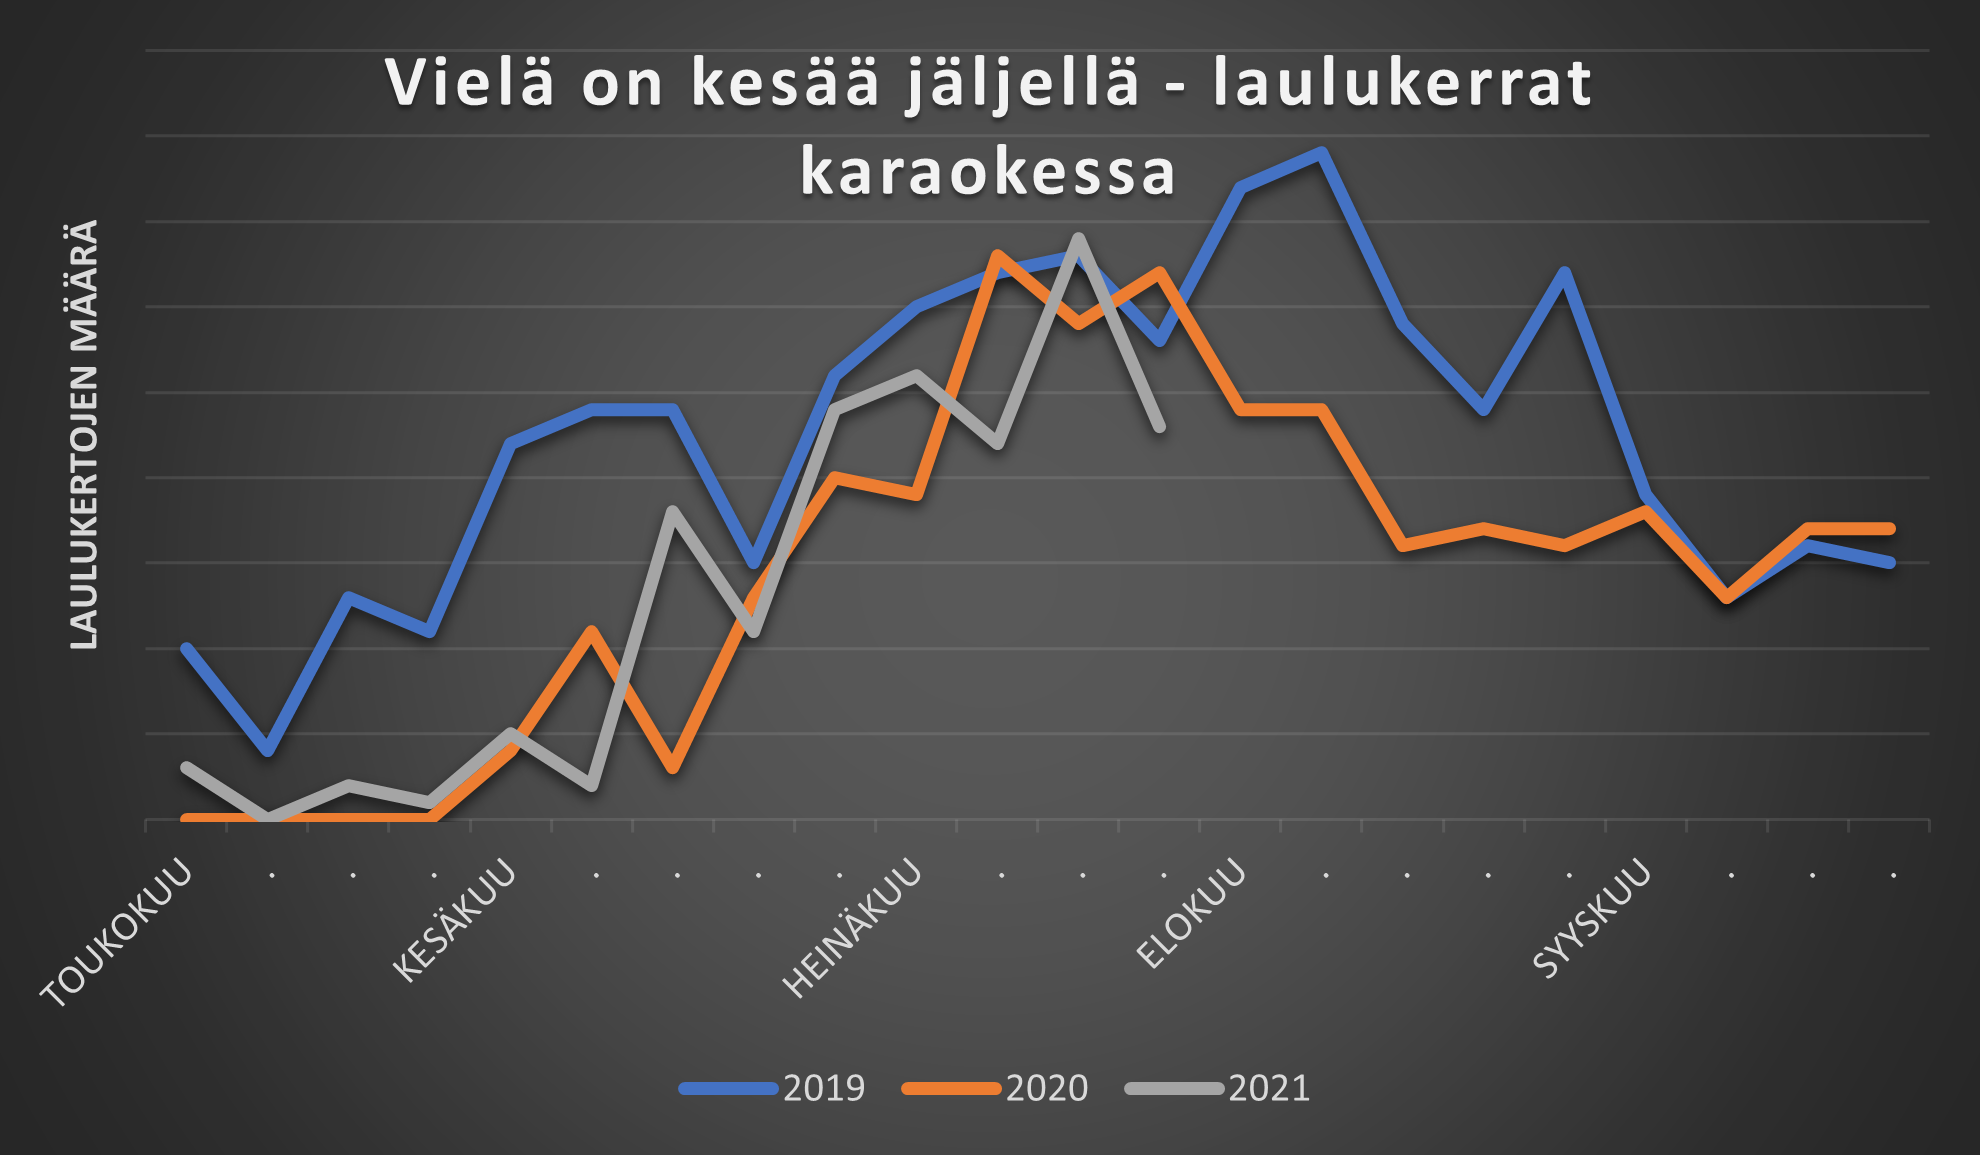 Vielä on kesää jäljellä -kappaleen laulukertoja karaokessa vuosilta 2019, 2020 ja 2021.